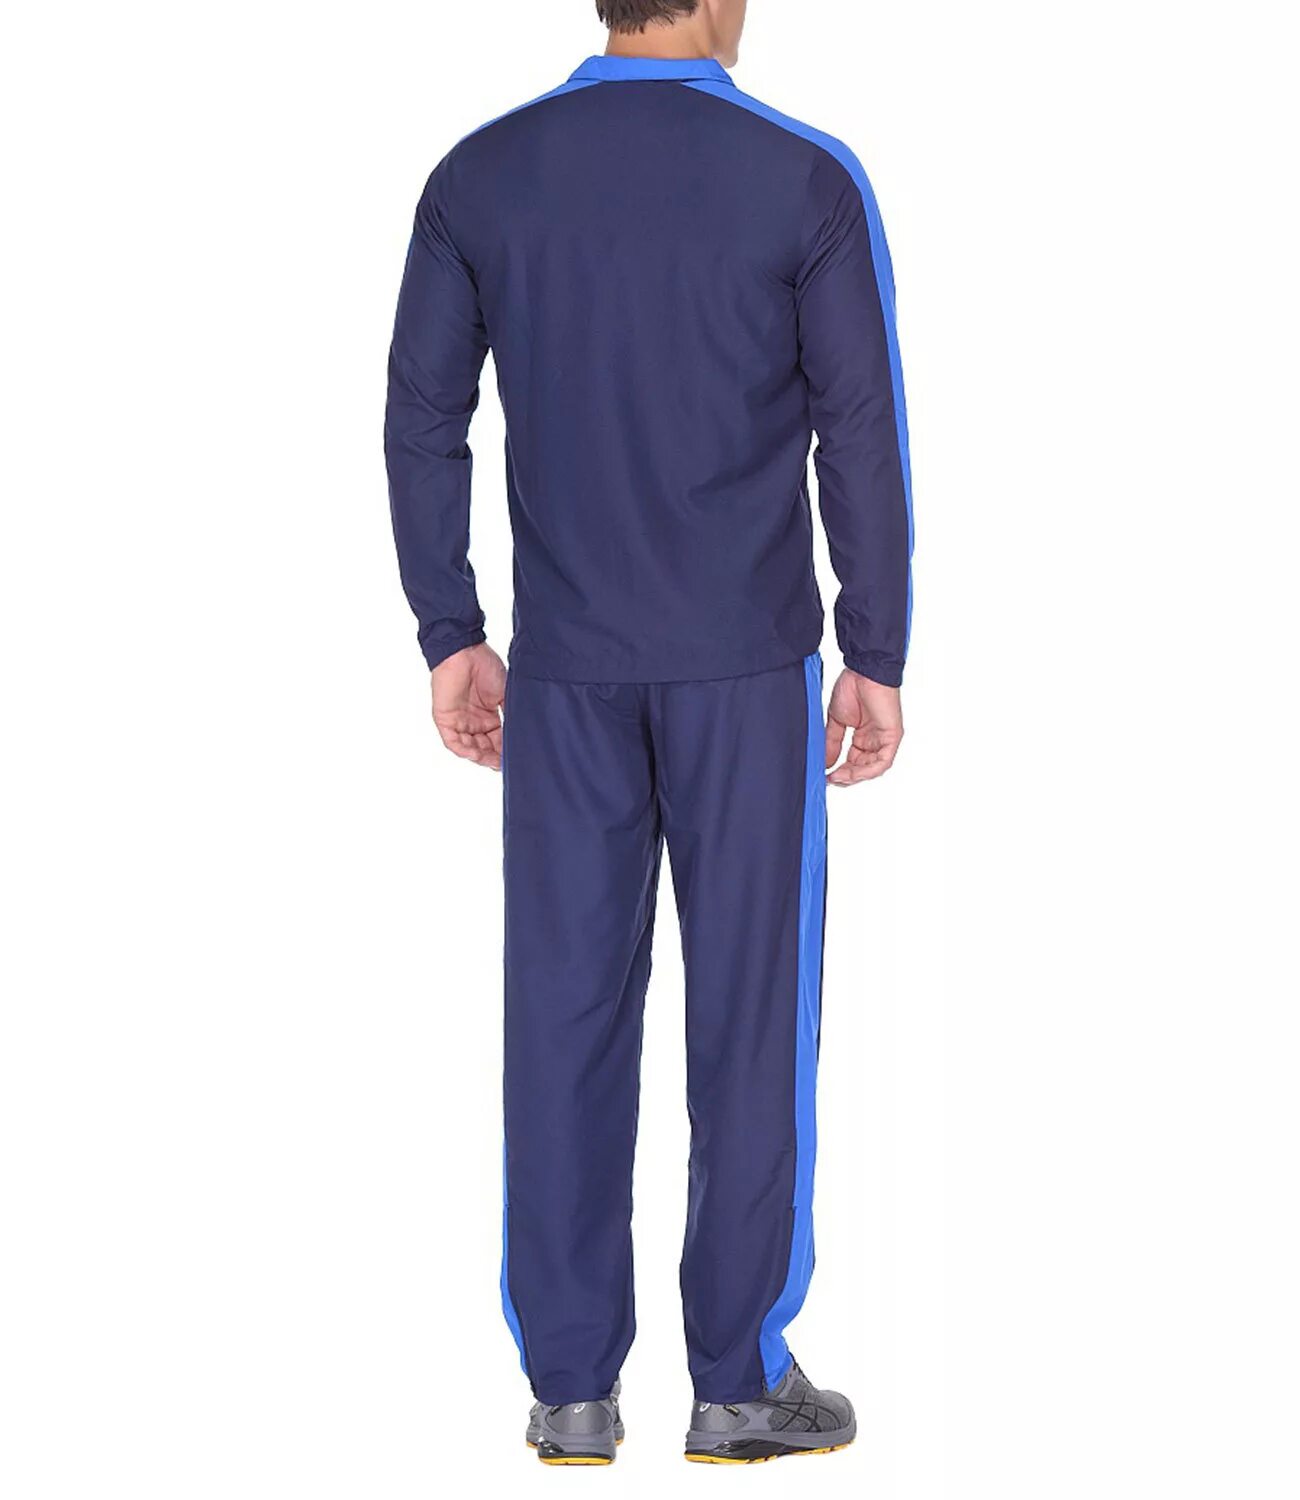 Спортивный костюм асикс. Костюм асикс мужской синий. ASICS Suit Essential. ASICS lined Suit спортивный костюм мужской синий. Мужской костюм асикс lined Suit.